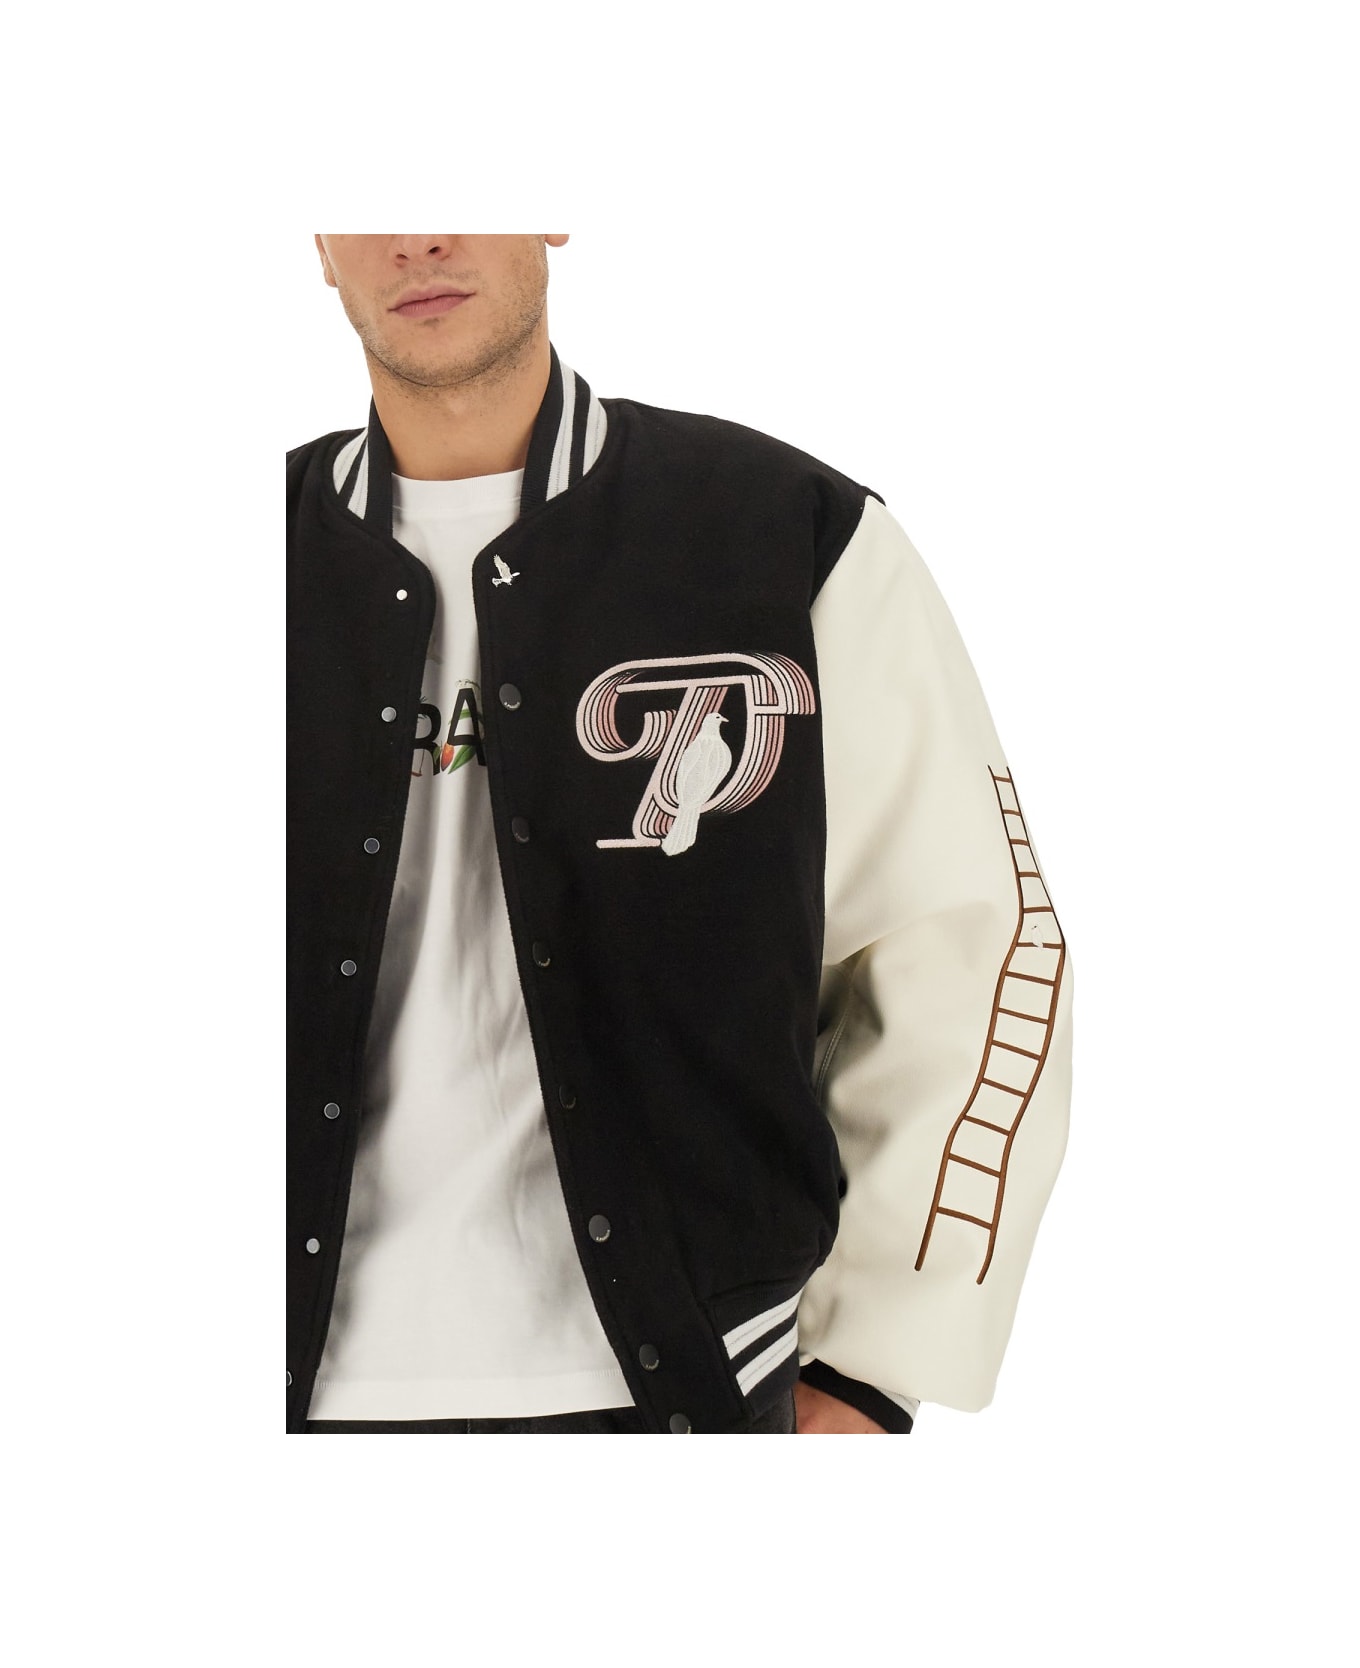 3.Paradis Jacket With Logo - BLACK